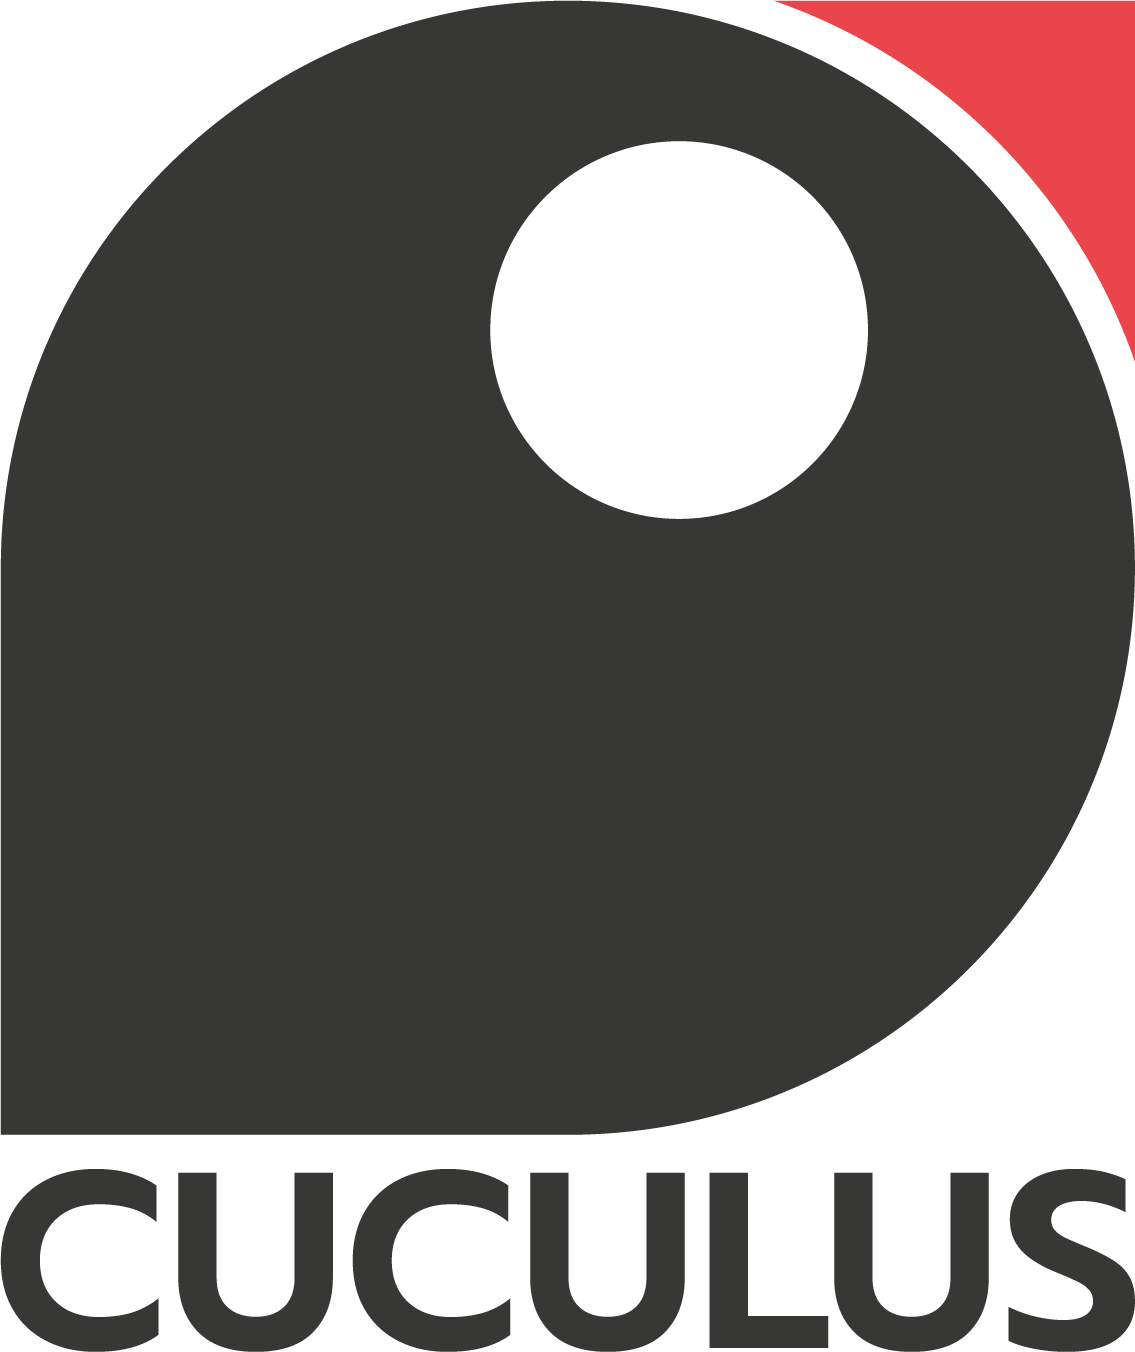 Cuculus